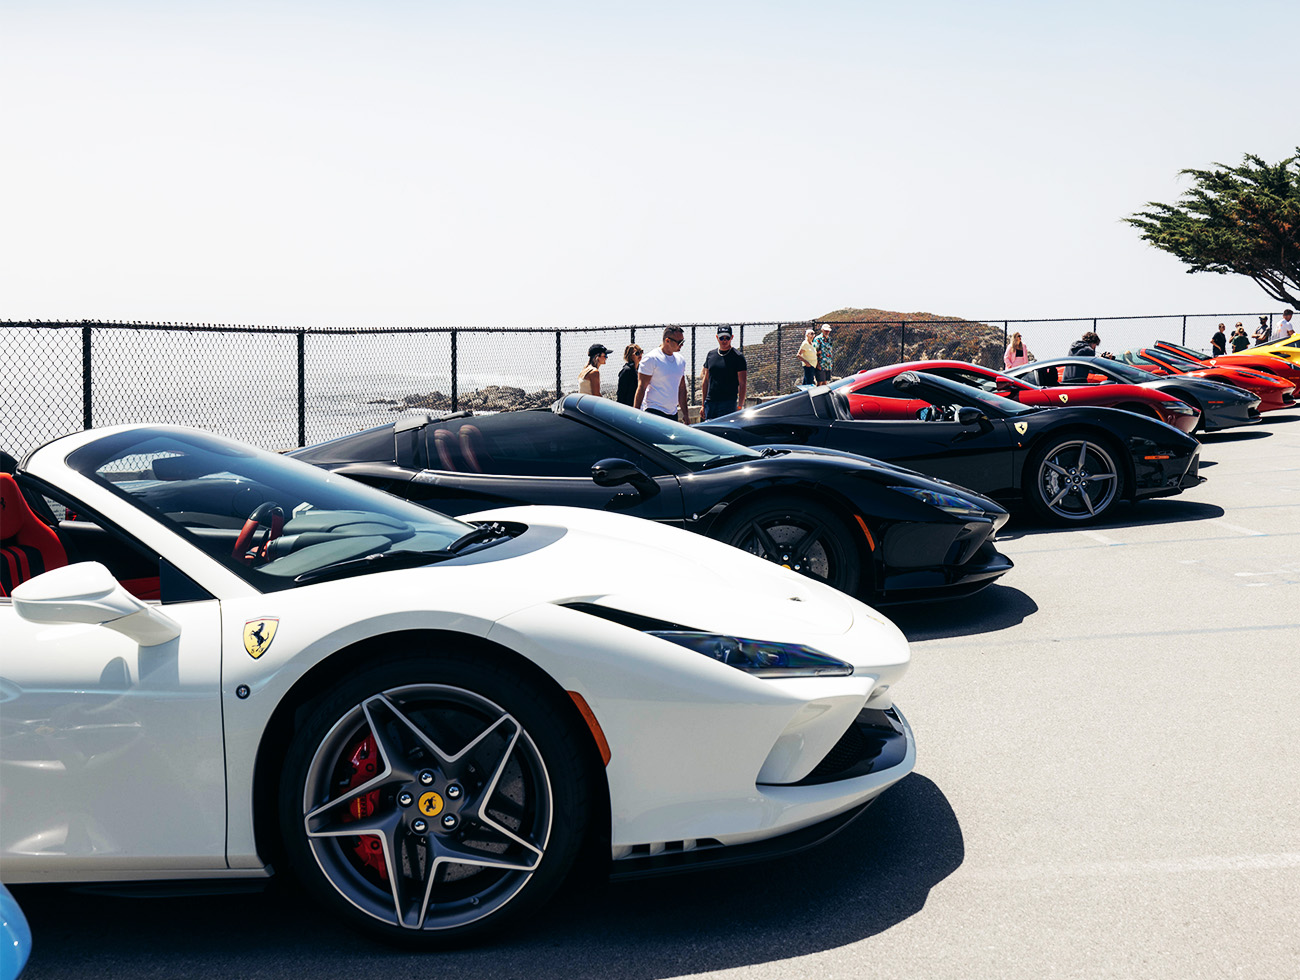 The Ferrari Premium Classic Program